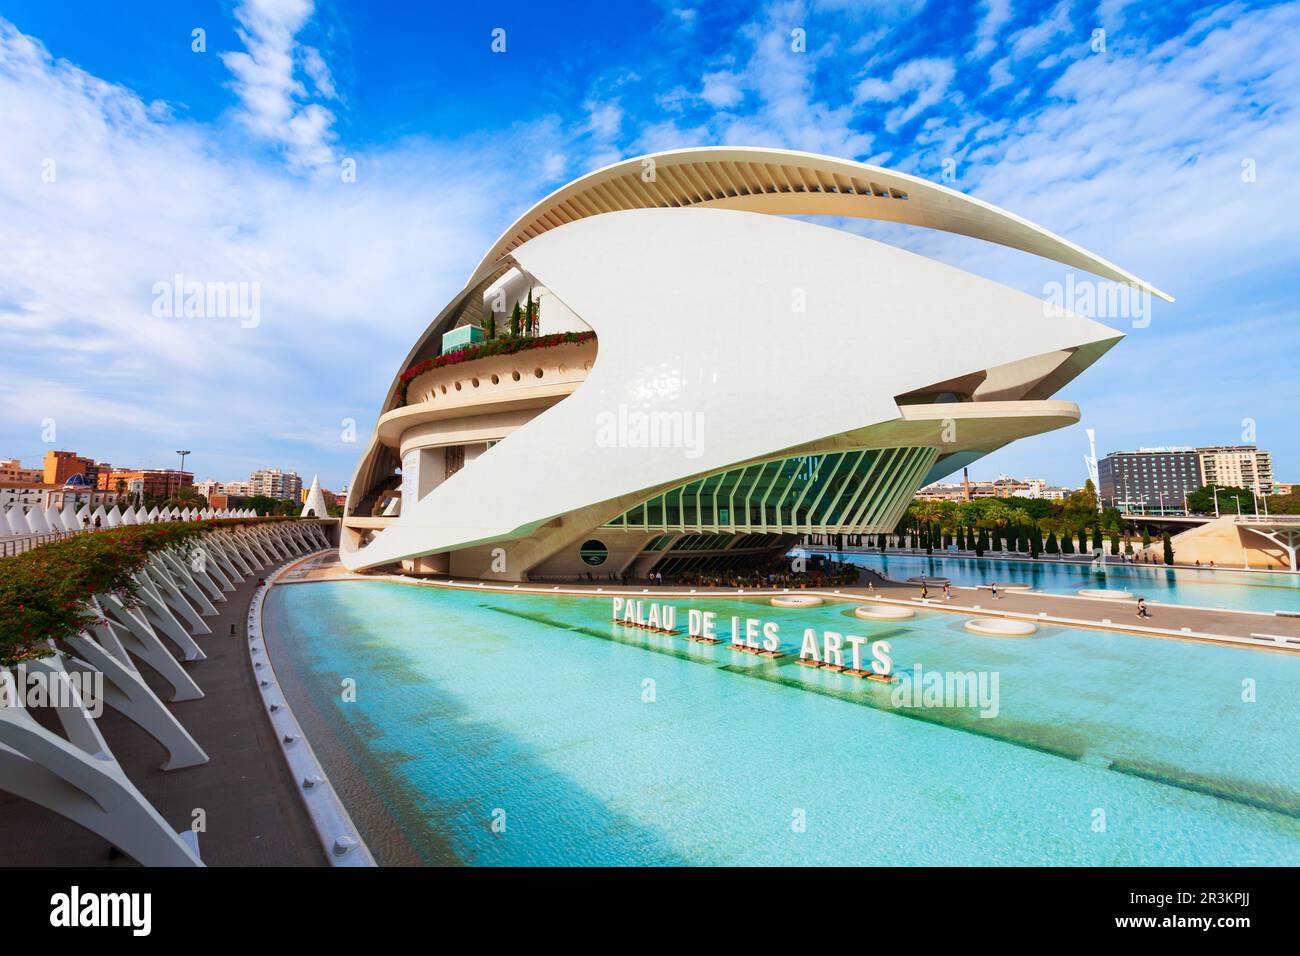 Valence, Espagne - 16 octobre 2021: Palau des Arts Reina Sofia ou la Reine Sofia le Palais des Arts est un opéra, centre artistique par Santiago Calatrava Banque D'Images